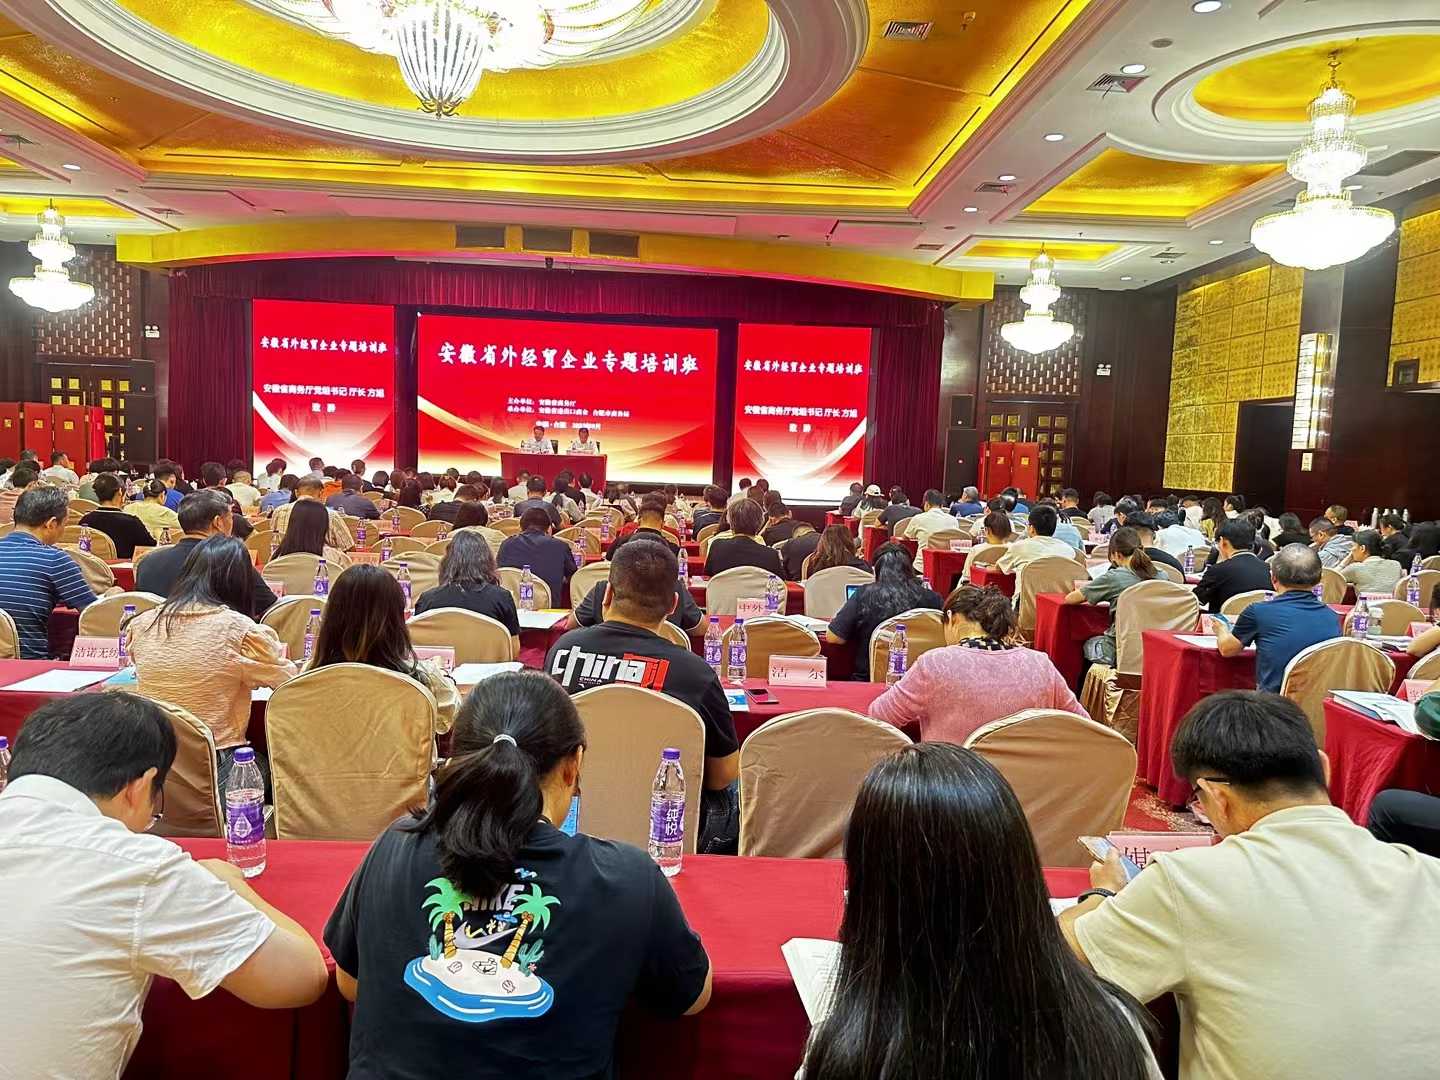 Parabéns pela abertura bem sucedida do curso de formação especial para empresas económicas e comerciais estrangeiras na província de Anhui